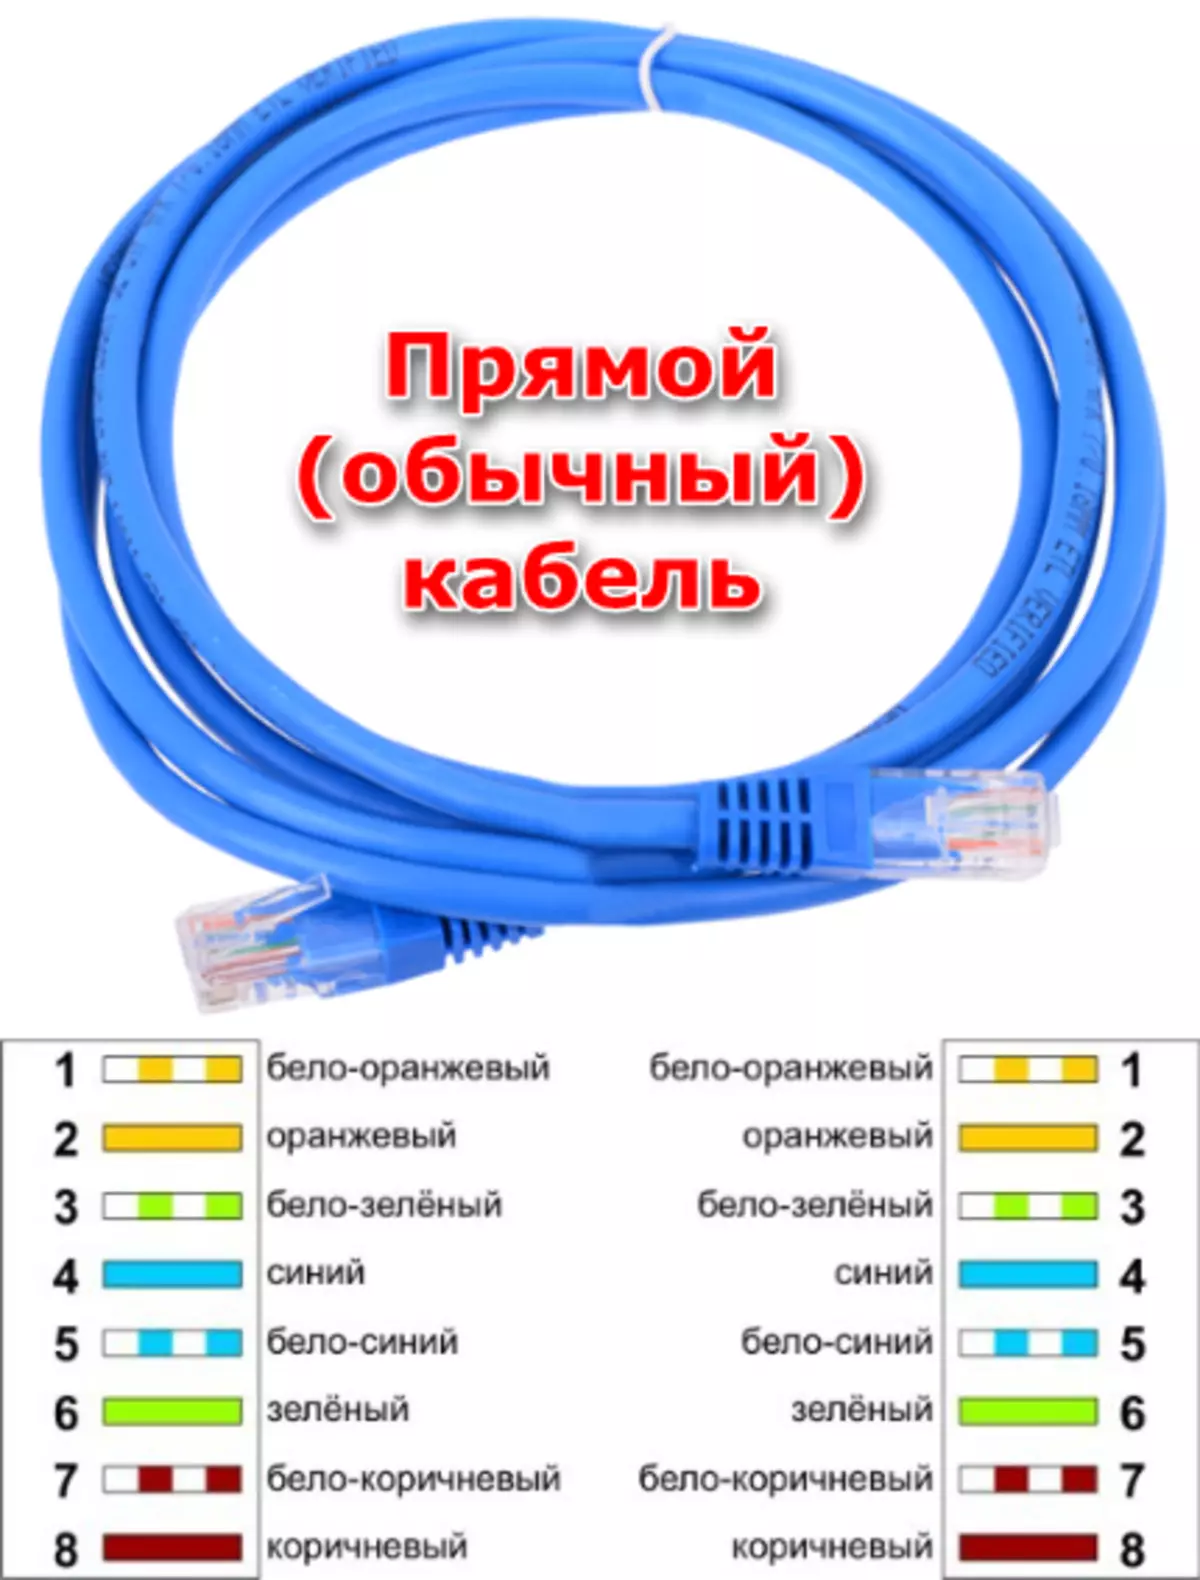 Direct nga koneksyon Network Cable aron makahimo usa ka lokal nga network